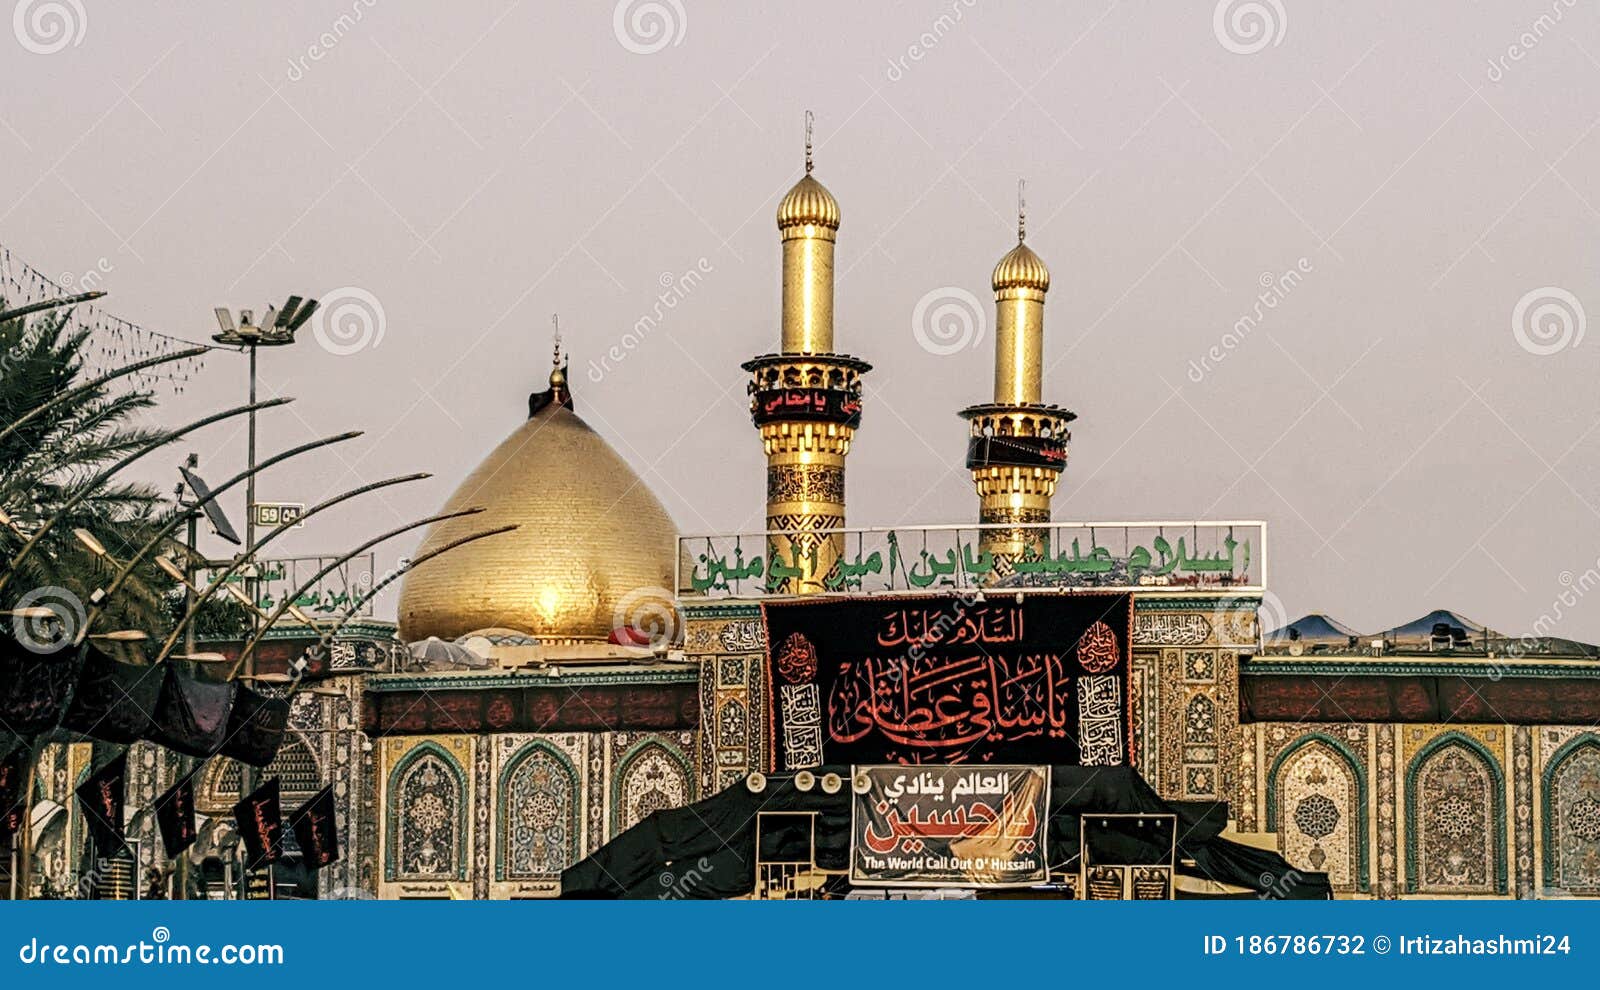 Karbala/Iraq- June 09 2020: Holy Shrine of Hazrat Imam Hussain HD ...